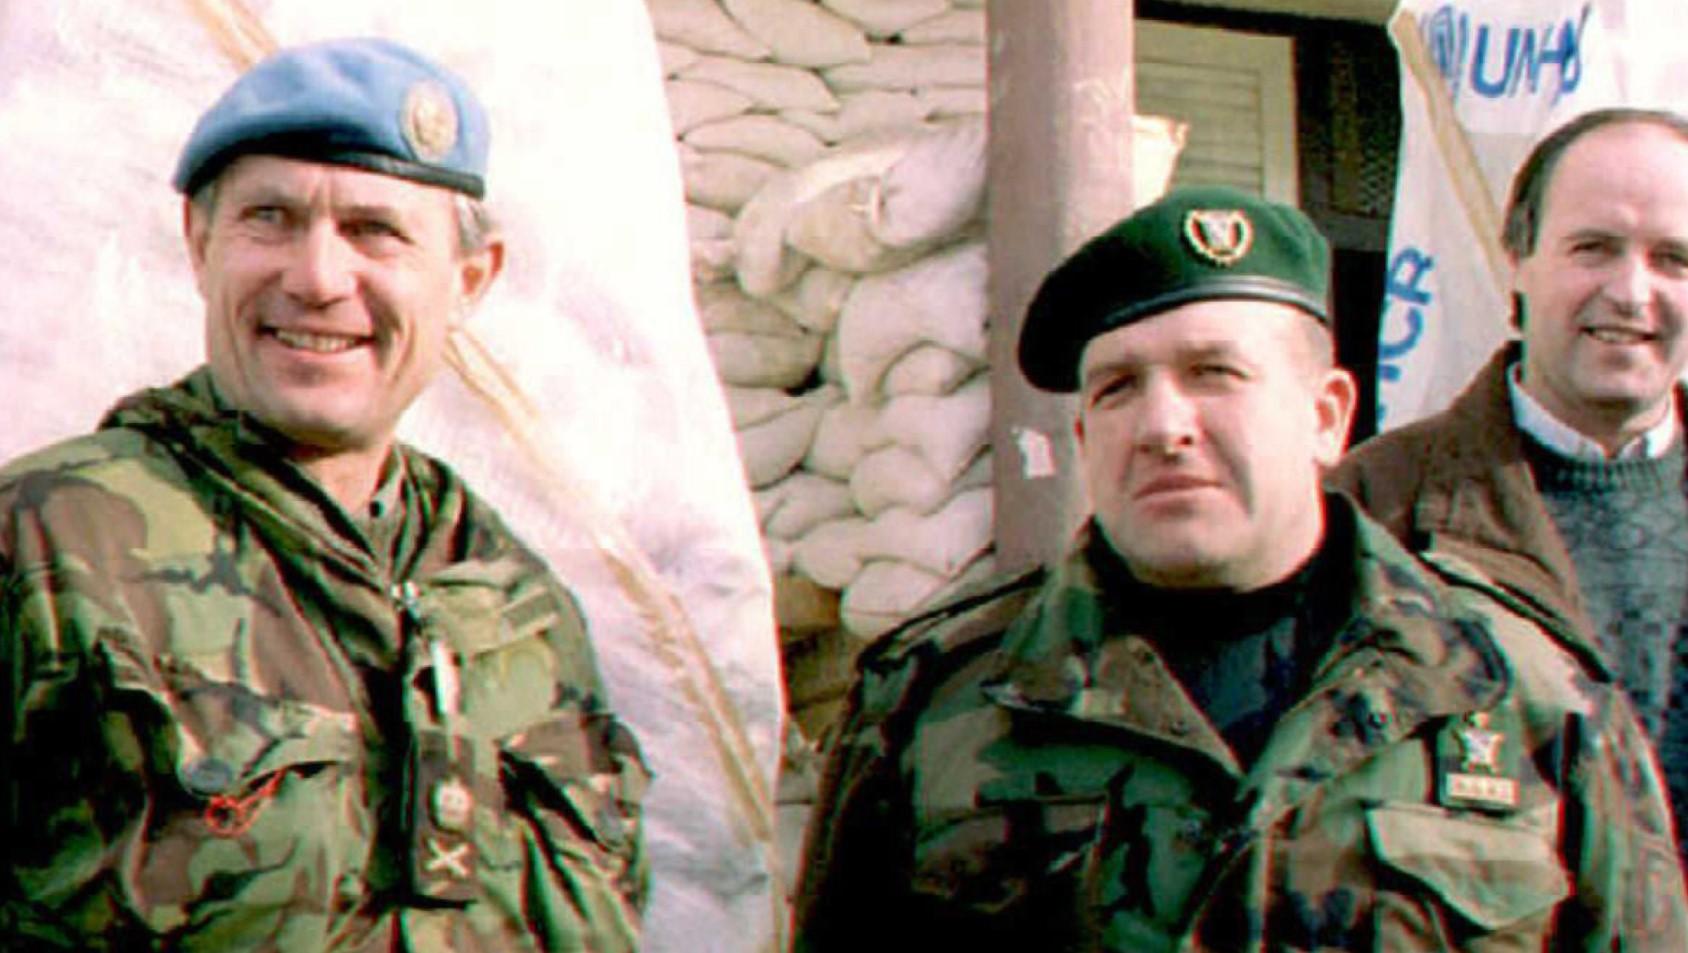 Komandant Petog korpusa Armije RBiH bio je general Atif Dudaković - Avaz